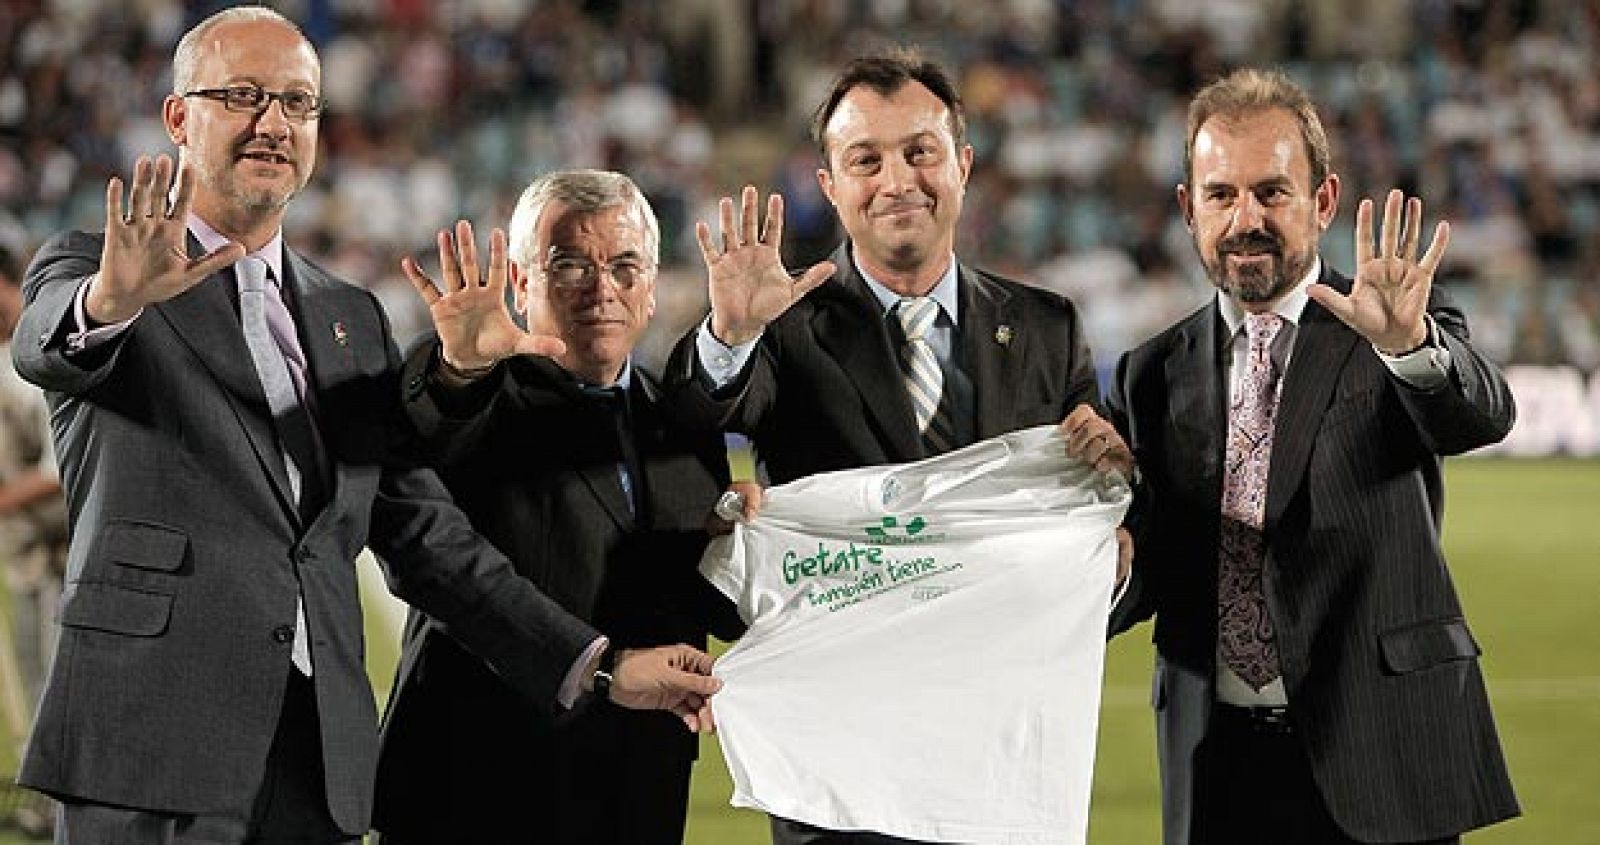 El presidente del Getafe, Ángel Torres, con una camiseta con el lema "Getafe también tiene una corazonada".